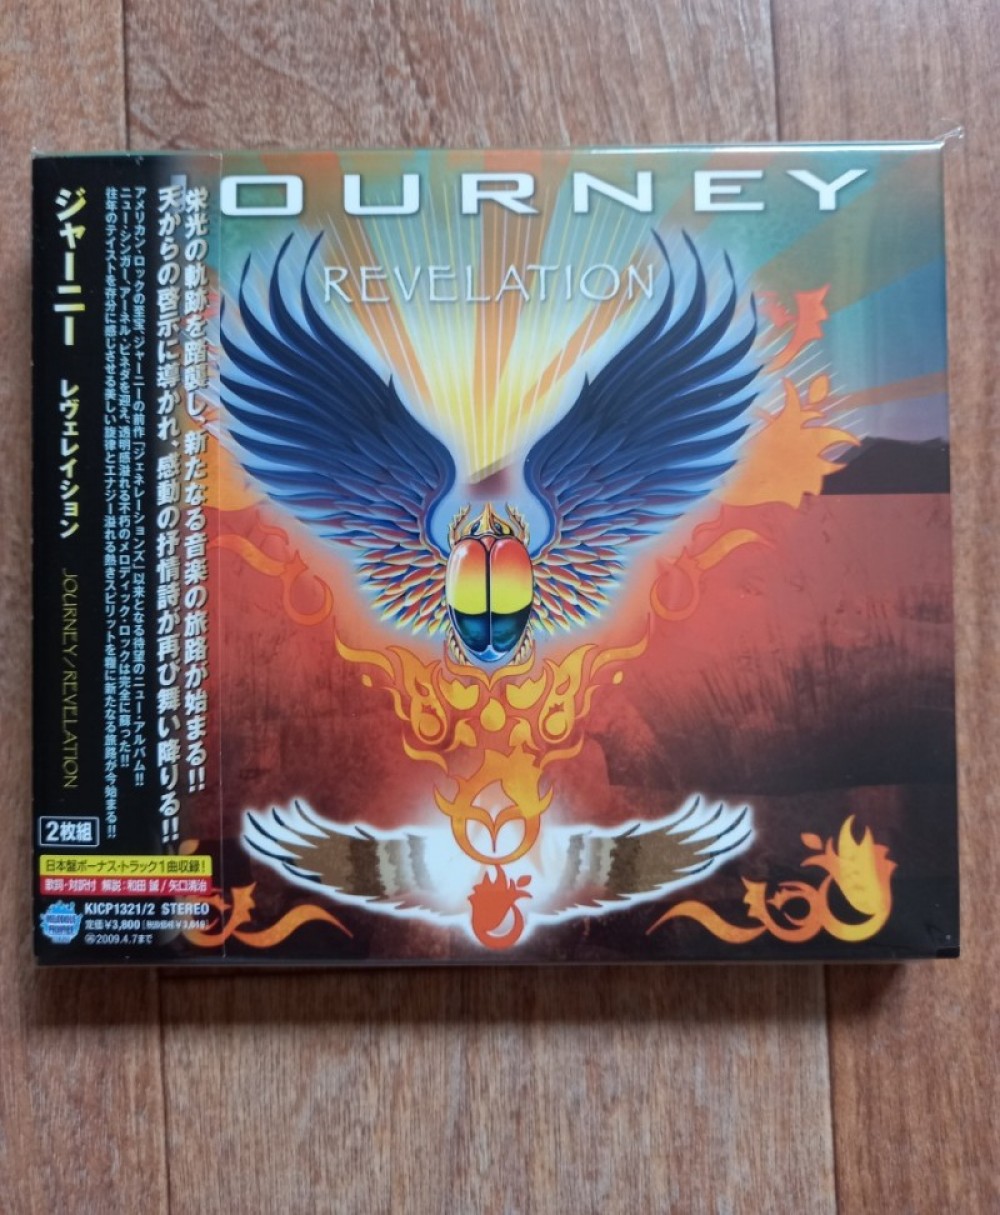 Journey - Revelation Album Photos View